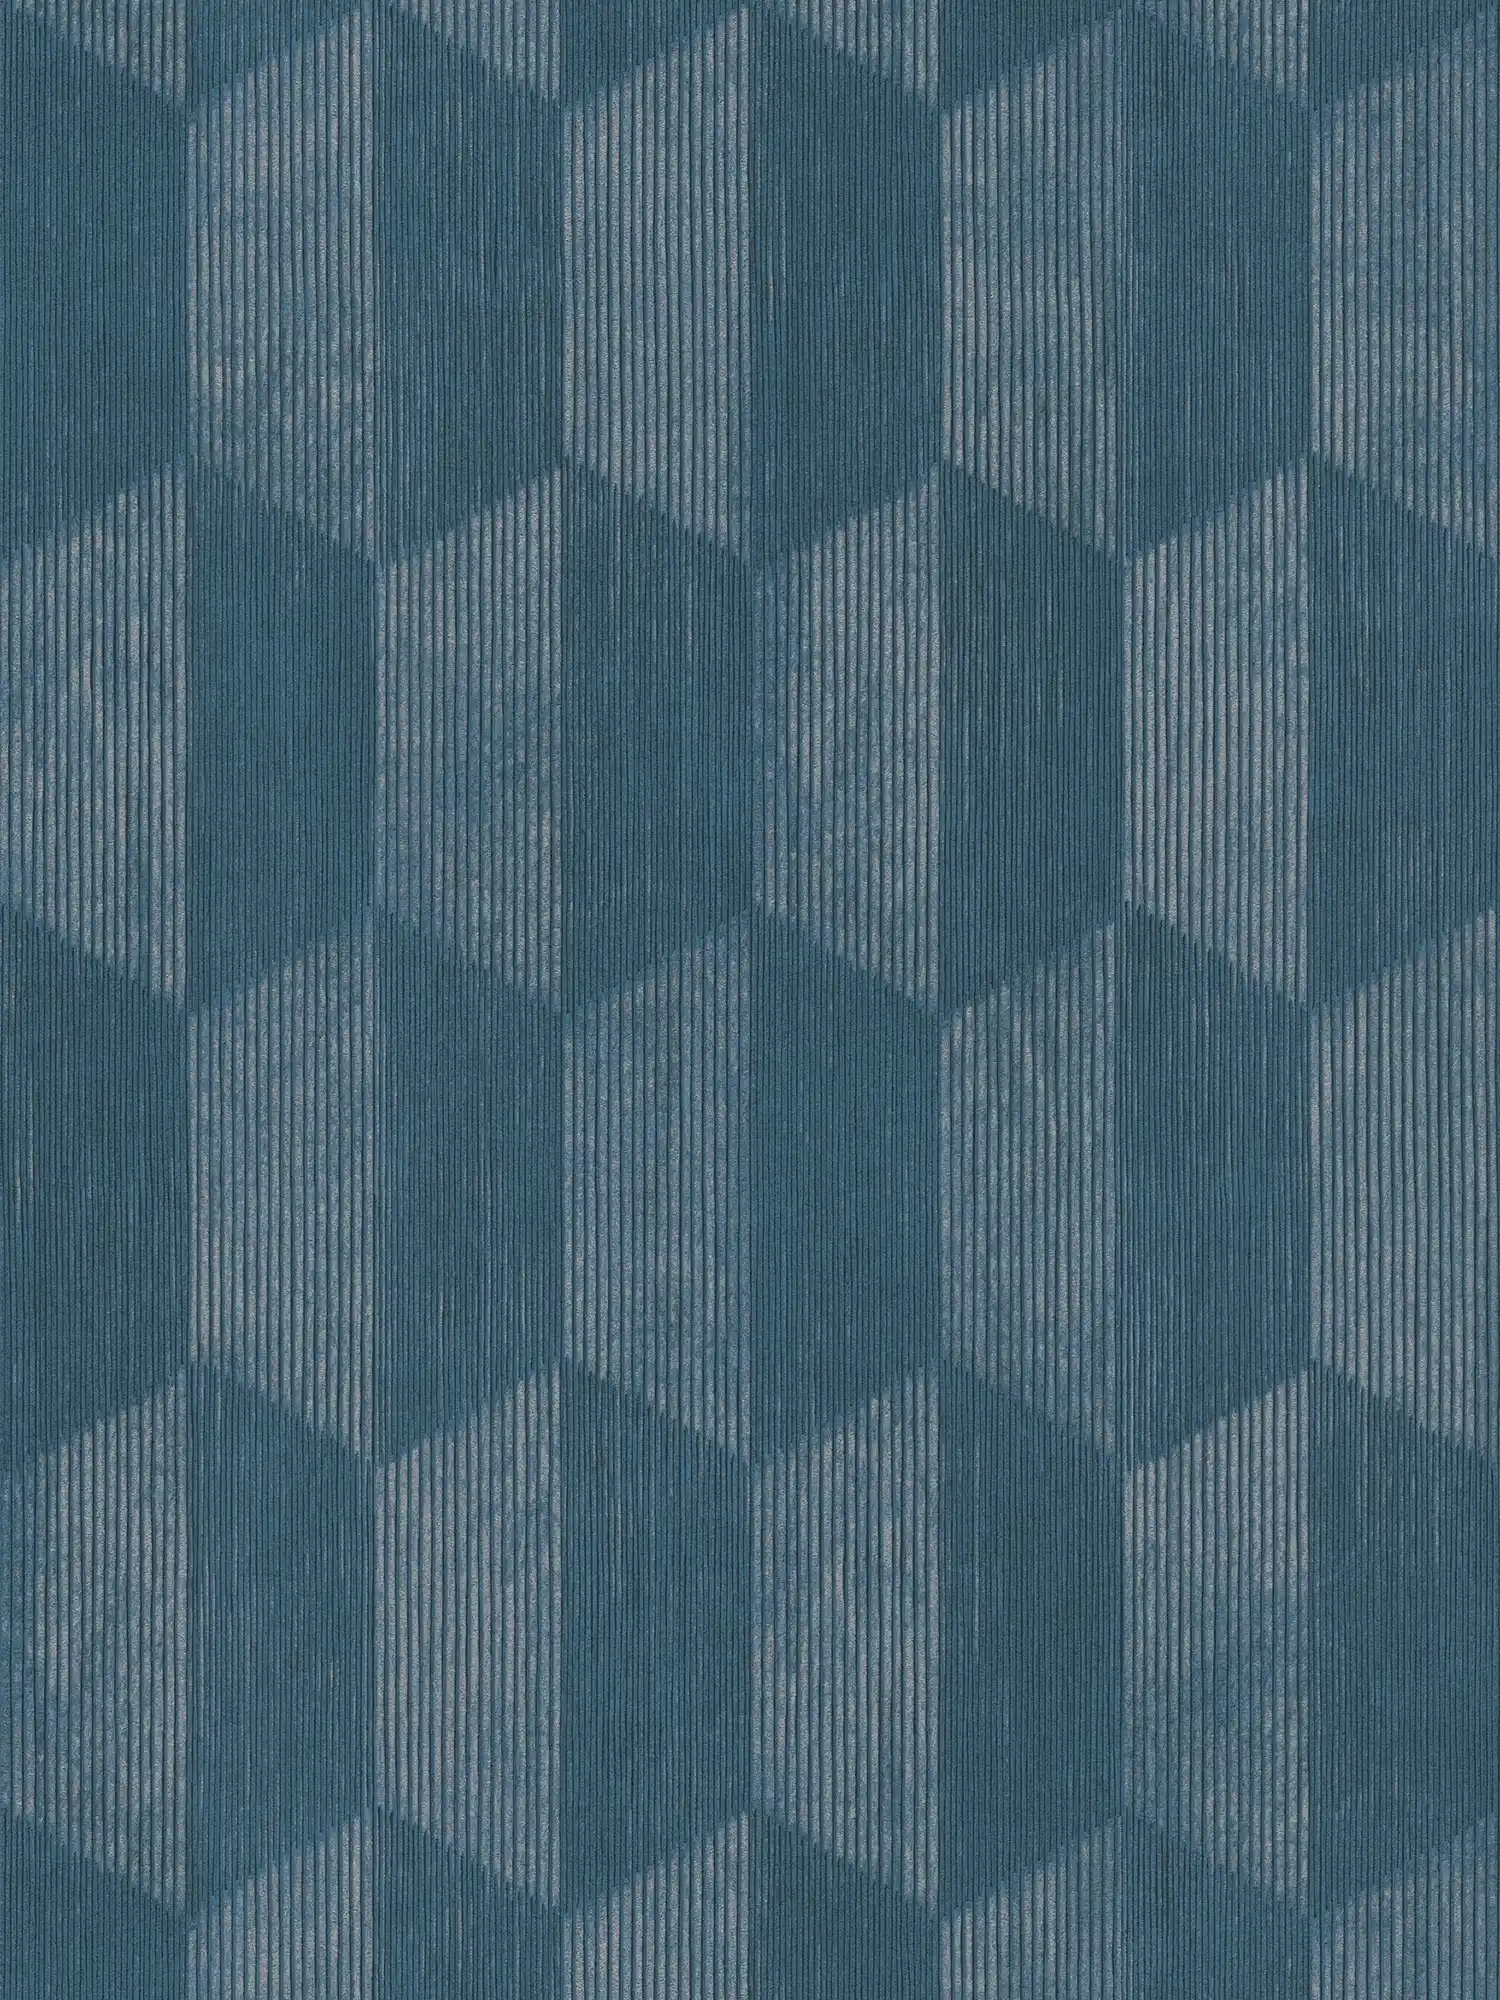 behang 3D patroon met grafisch facet design - blauw
